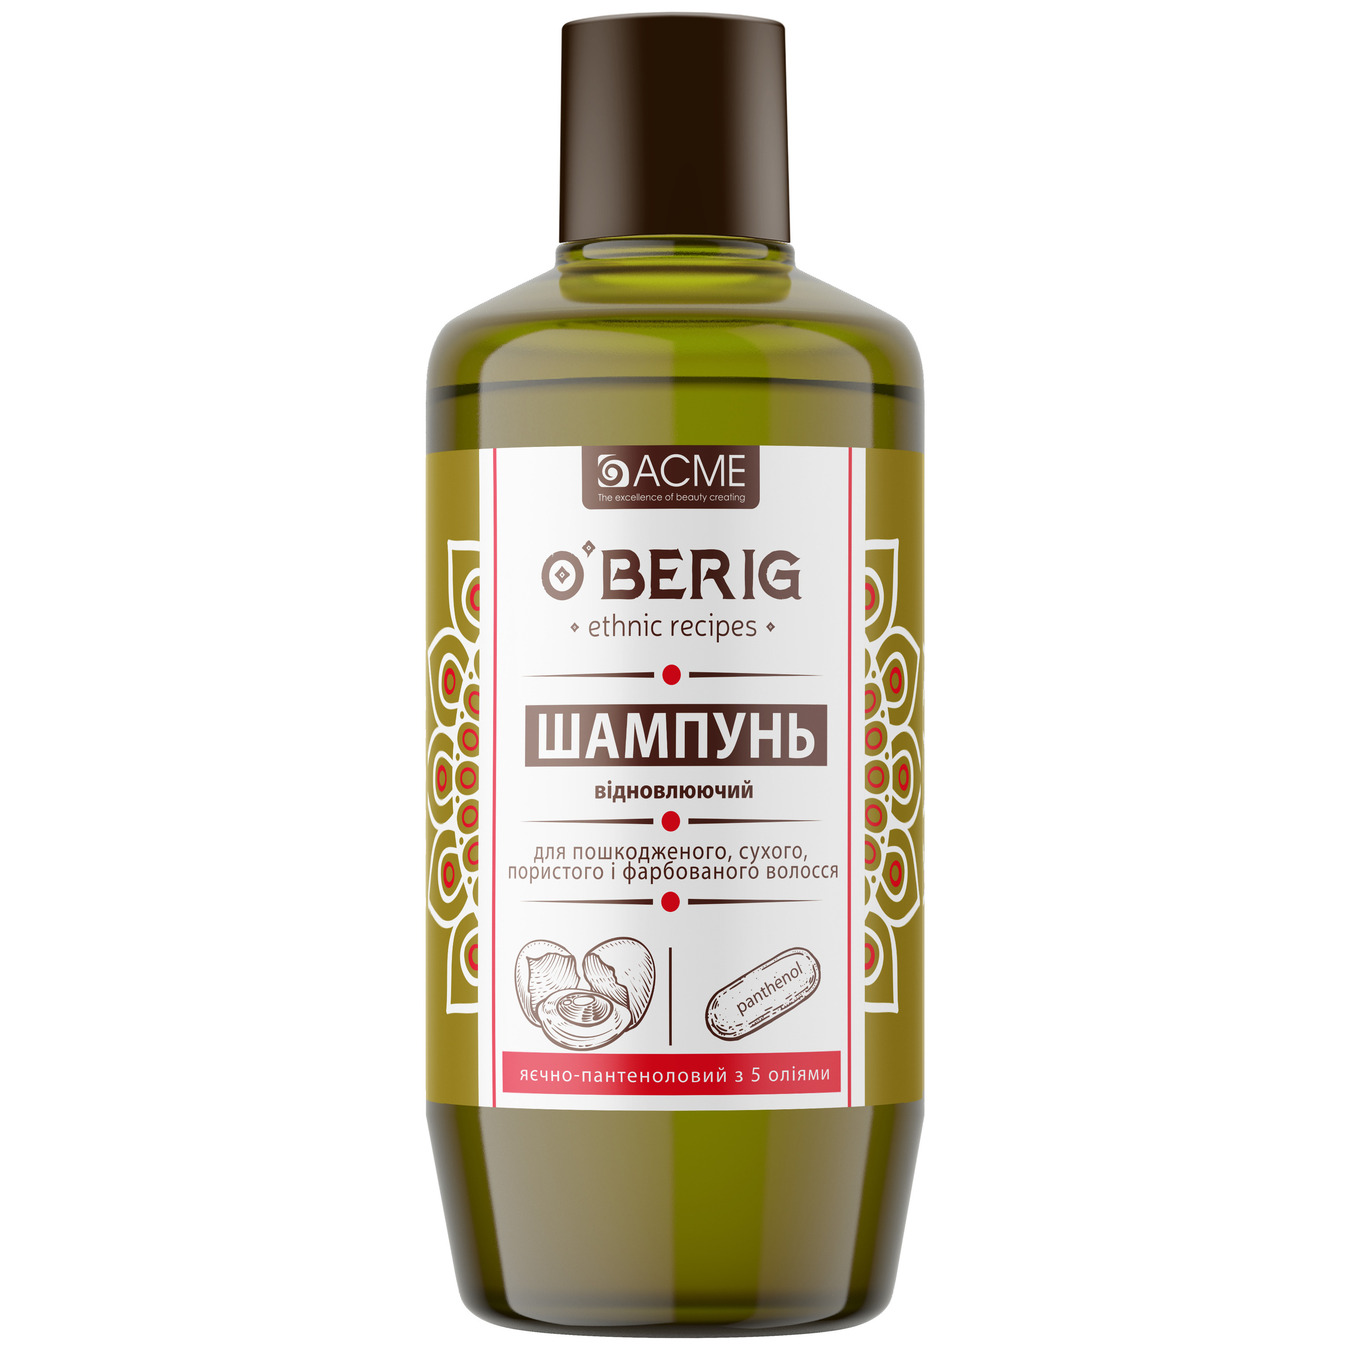 Шампунь-олія O'Berig для волосся пошкодженного сухого пористого та фарбованого яєчно-пантеноловий з 5 оліями 500 мл